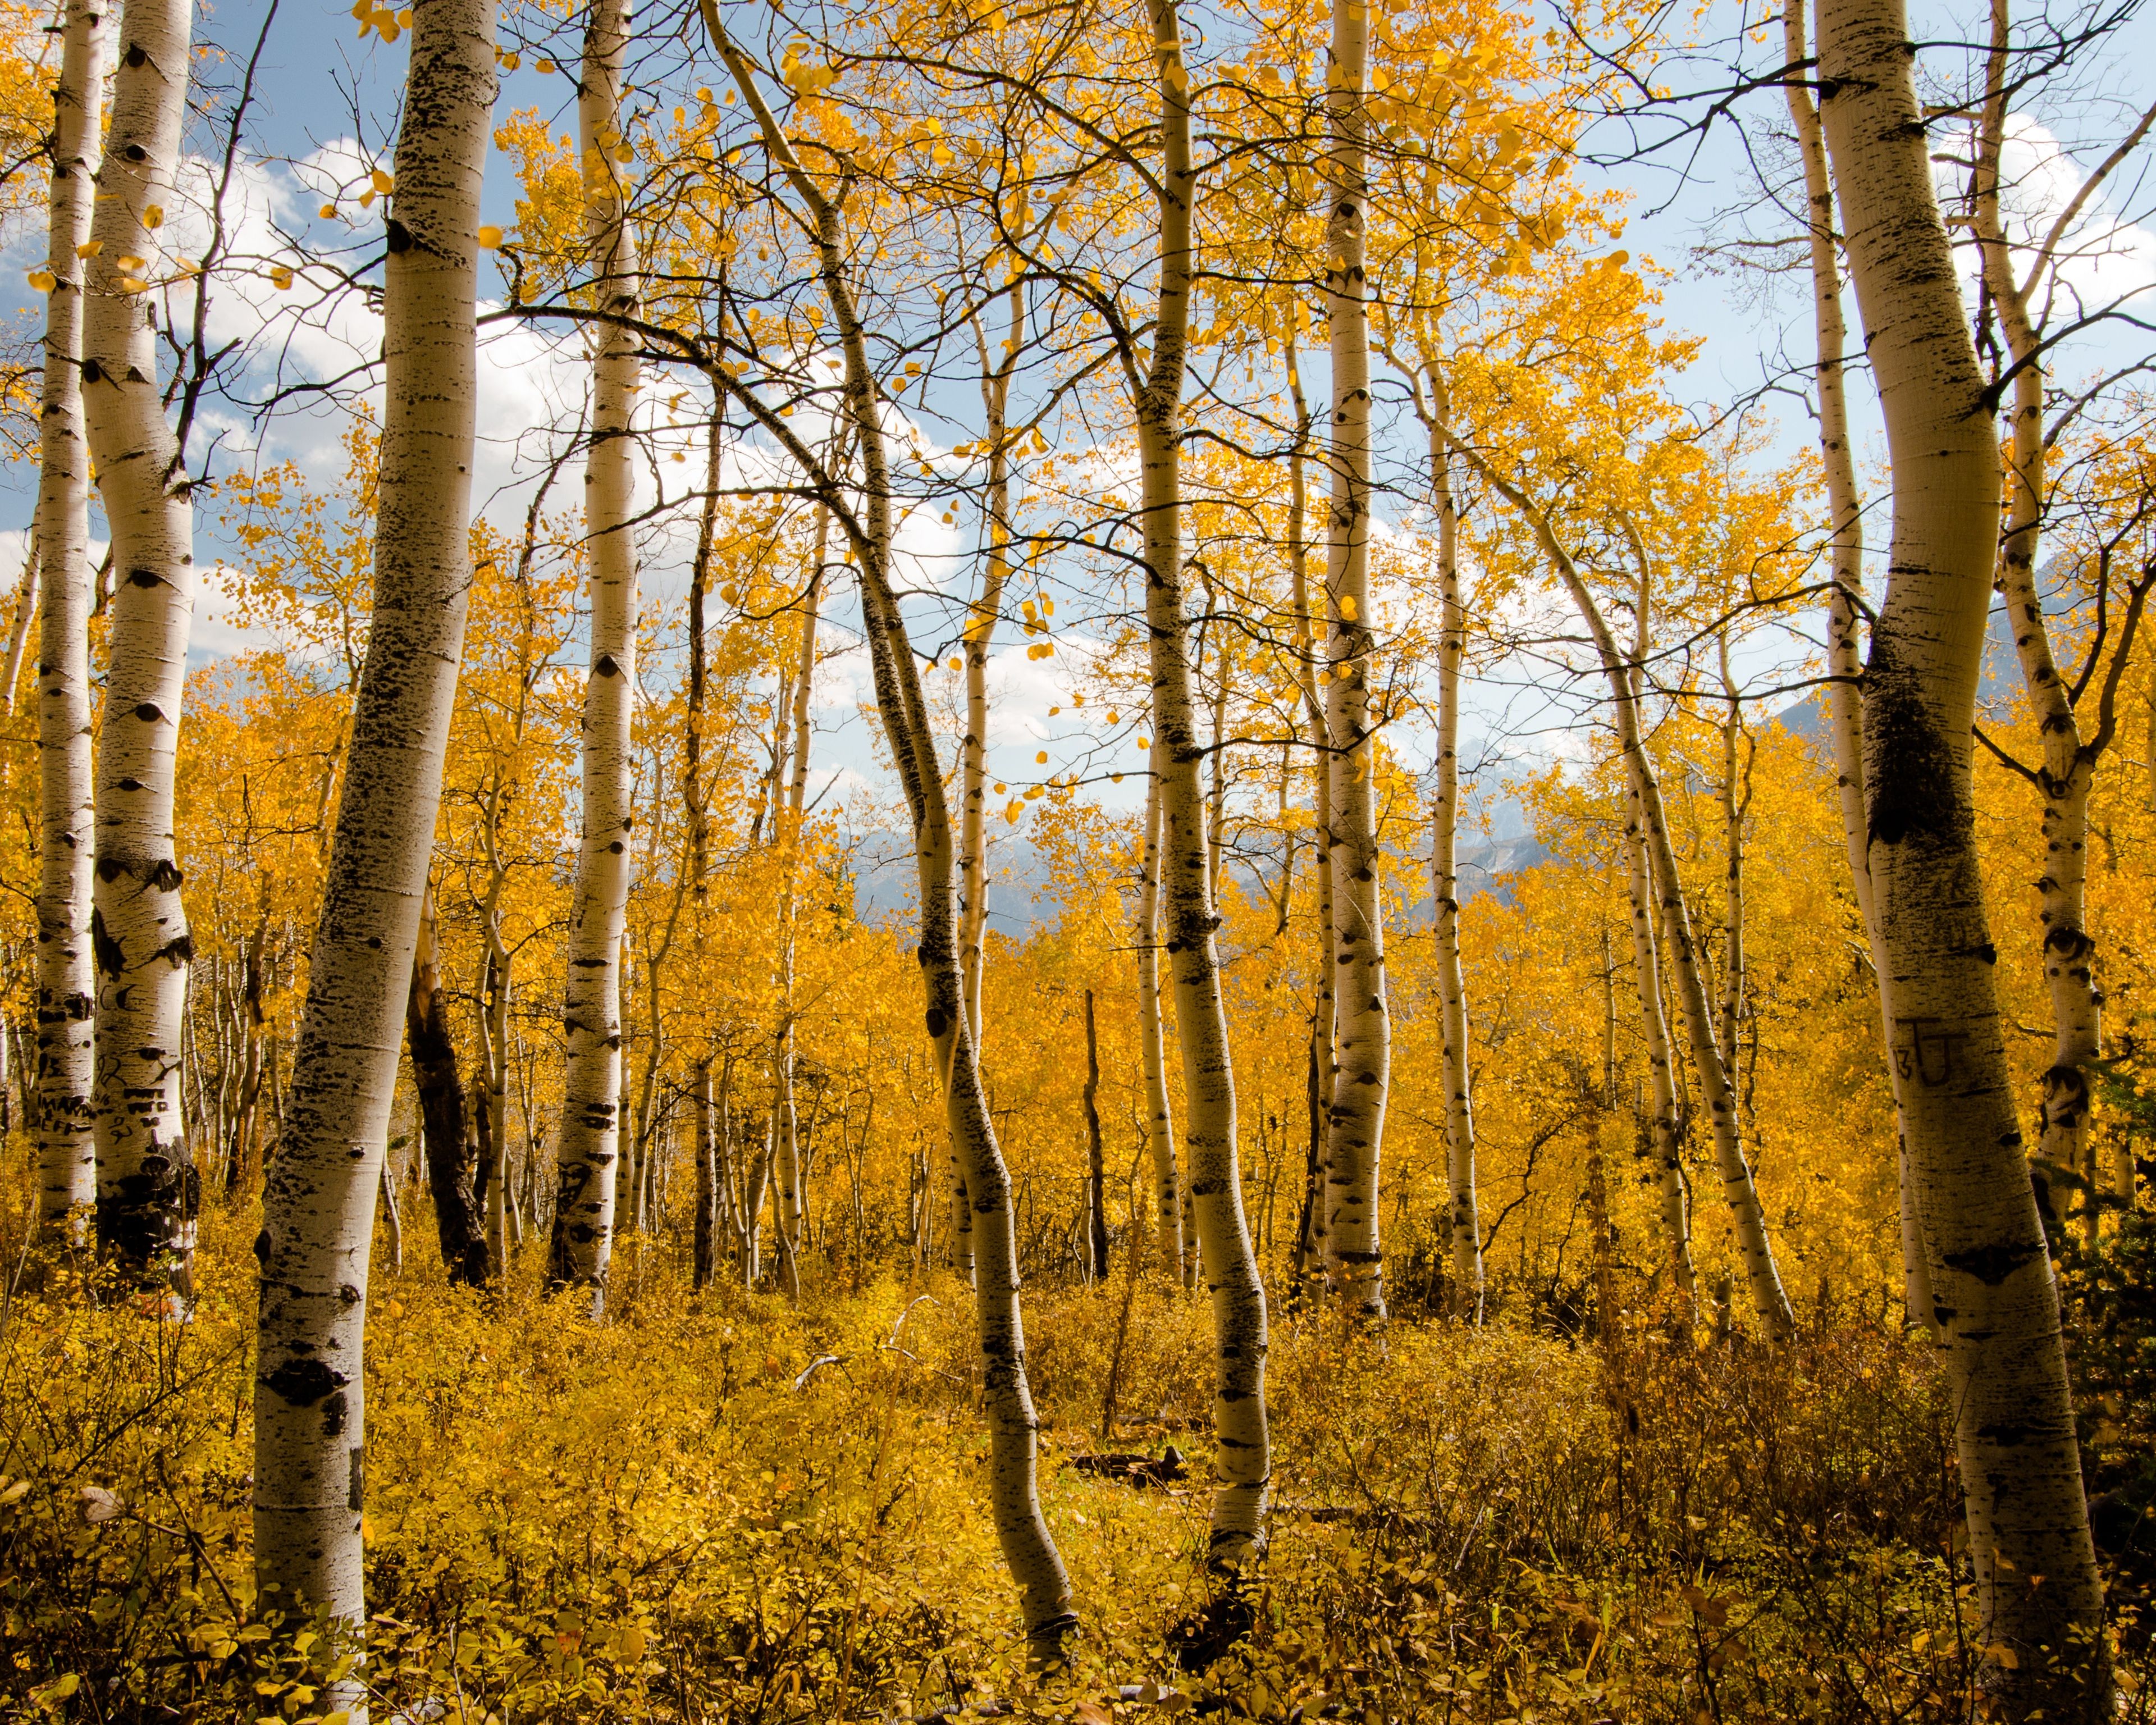 Aspen trees turn yellow in autumn.